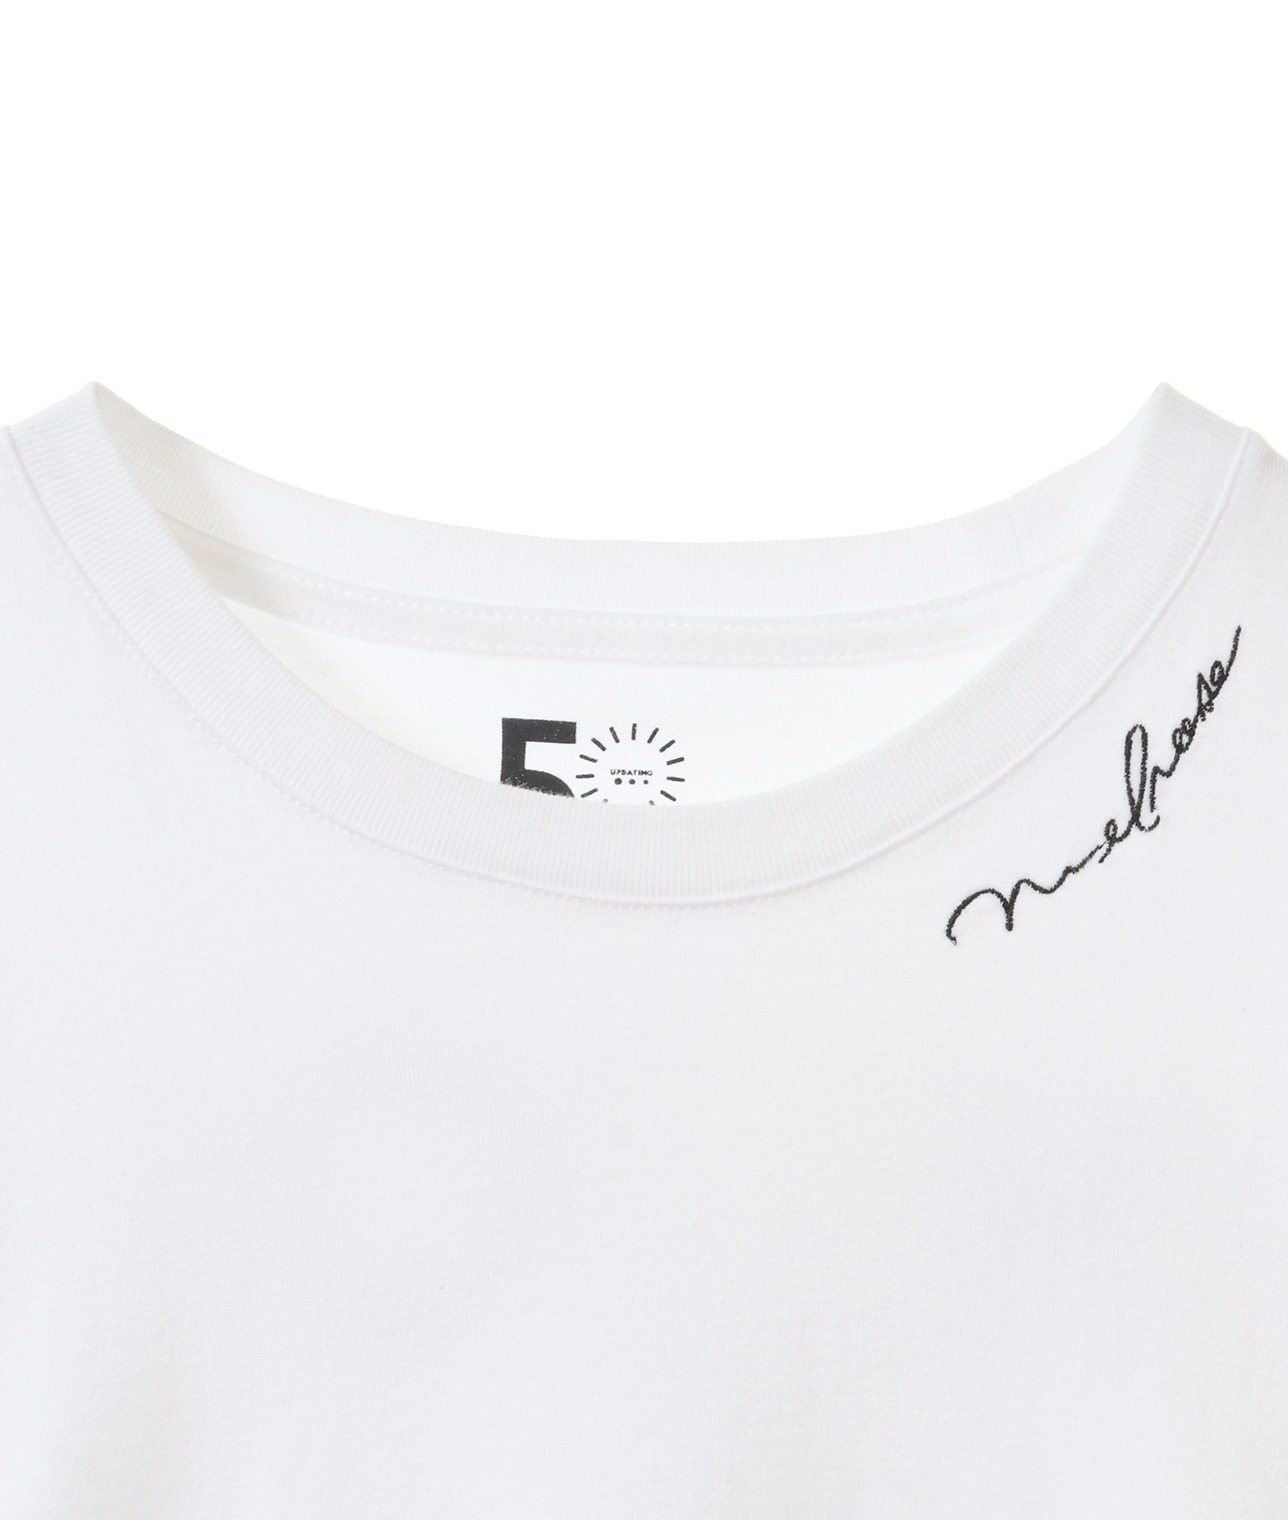 【メルローズ50周年限定】ロゴプリントTシャツ 詳細画像 ホワイト 2